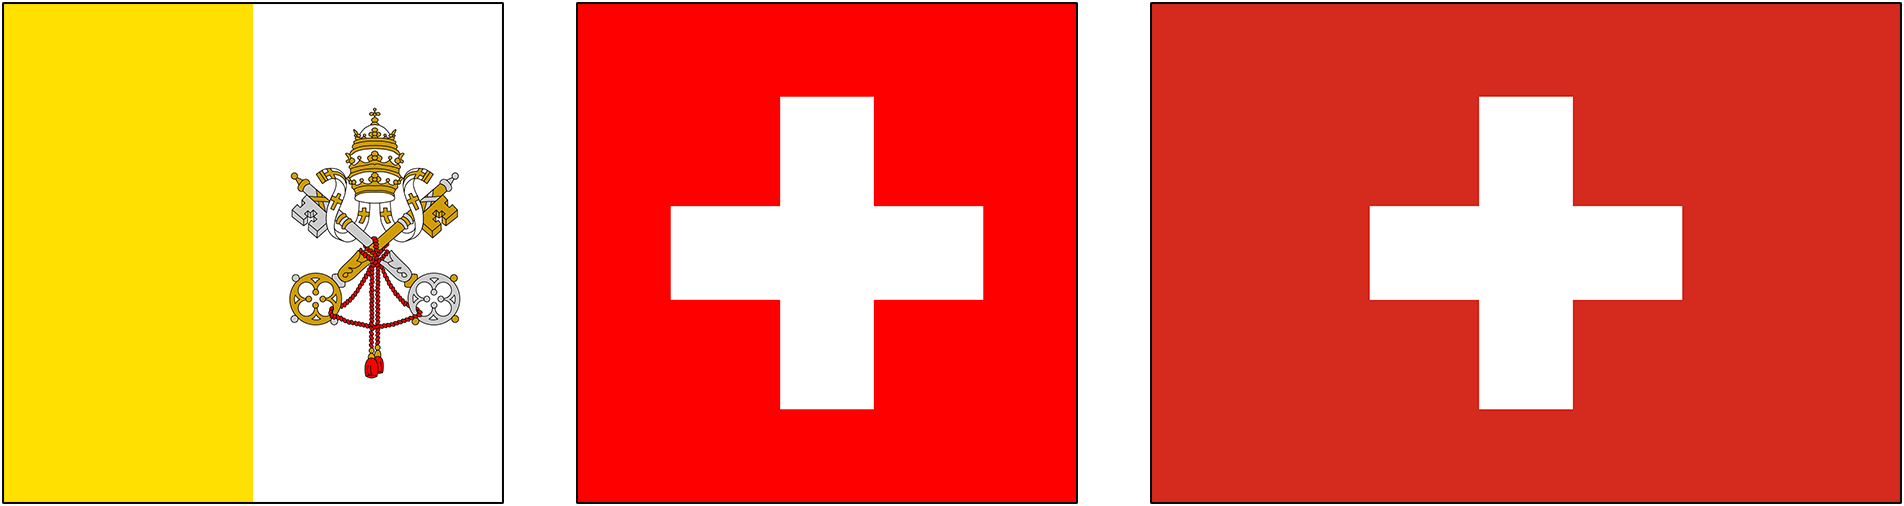 Bandera del Vaticano y banderas de Suiza